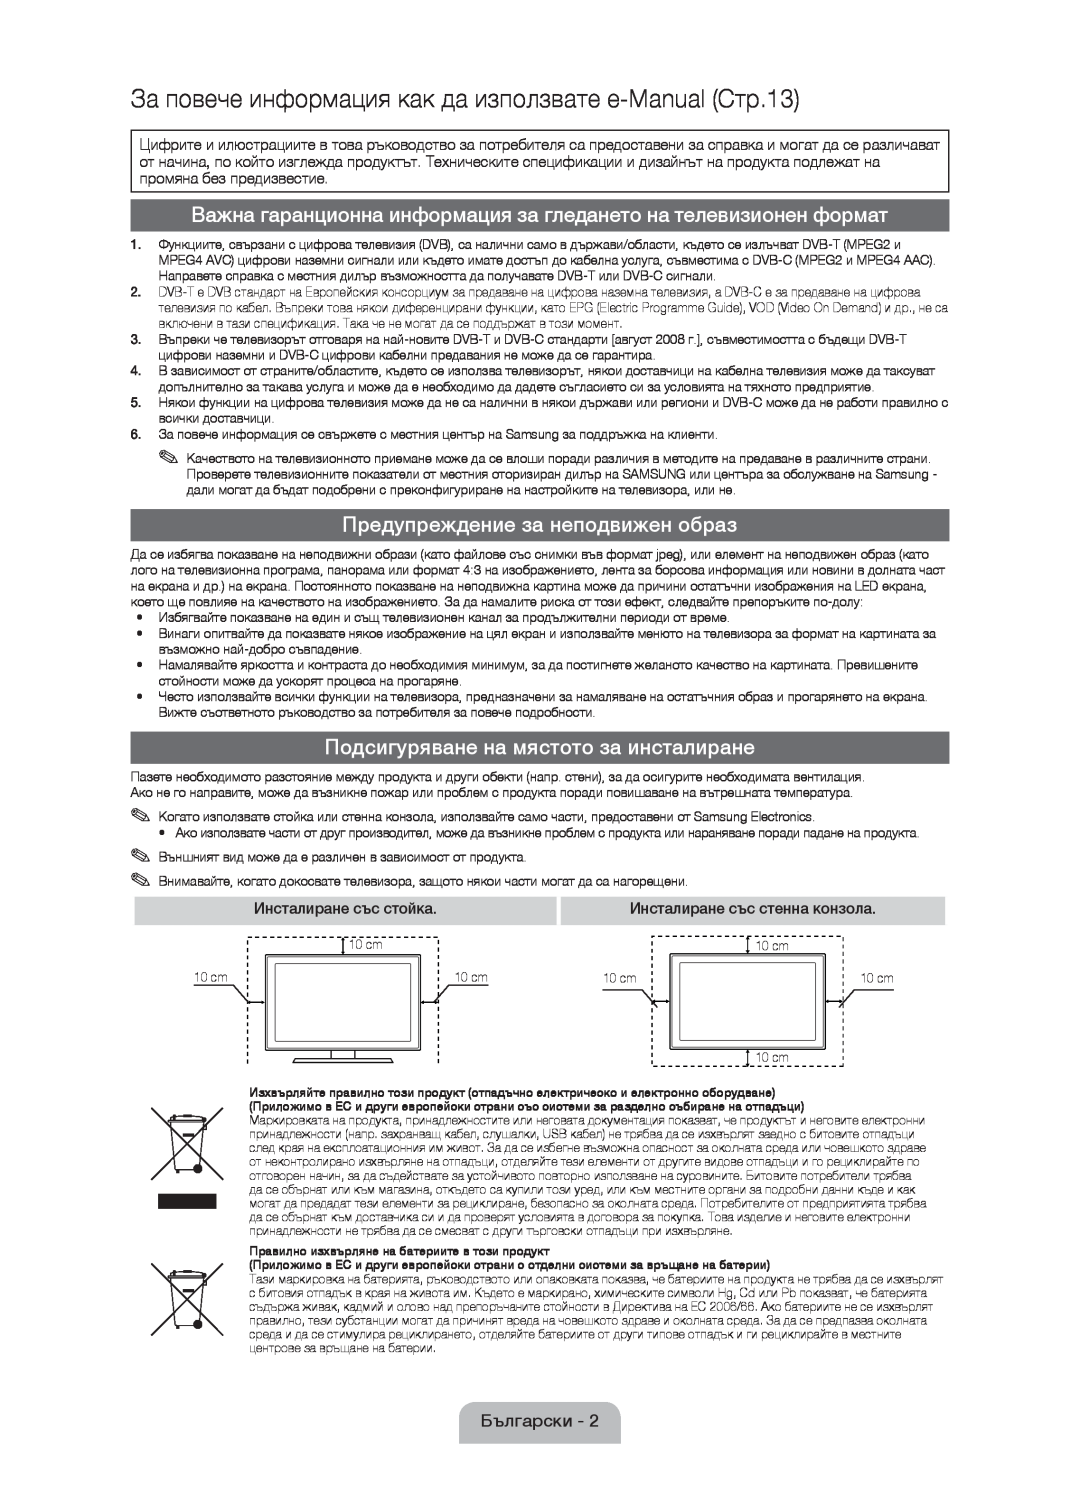 Samsung UE37D5000PWXXH manual За повече информация как да използвате e-Manual Стр.13, Предупреждение за неподвижен образ 